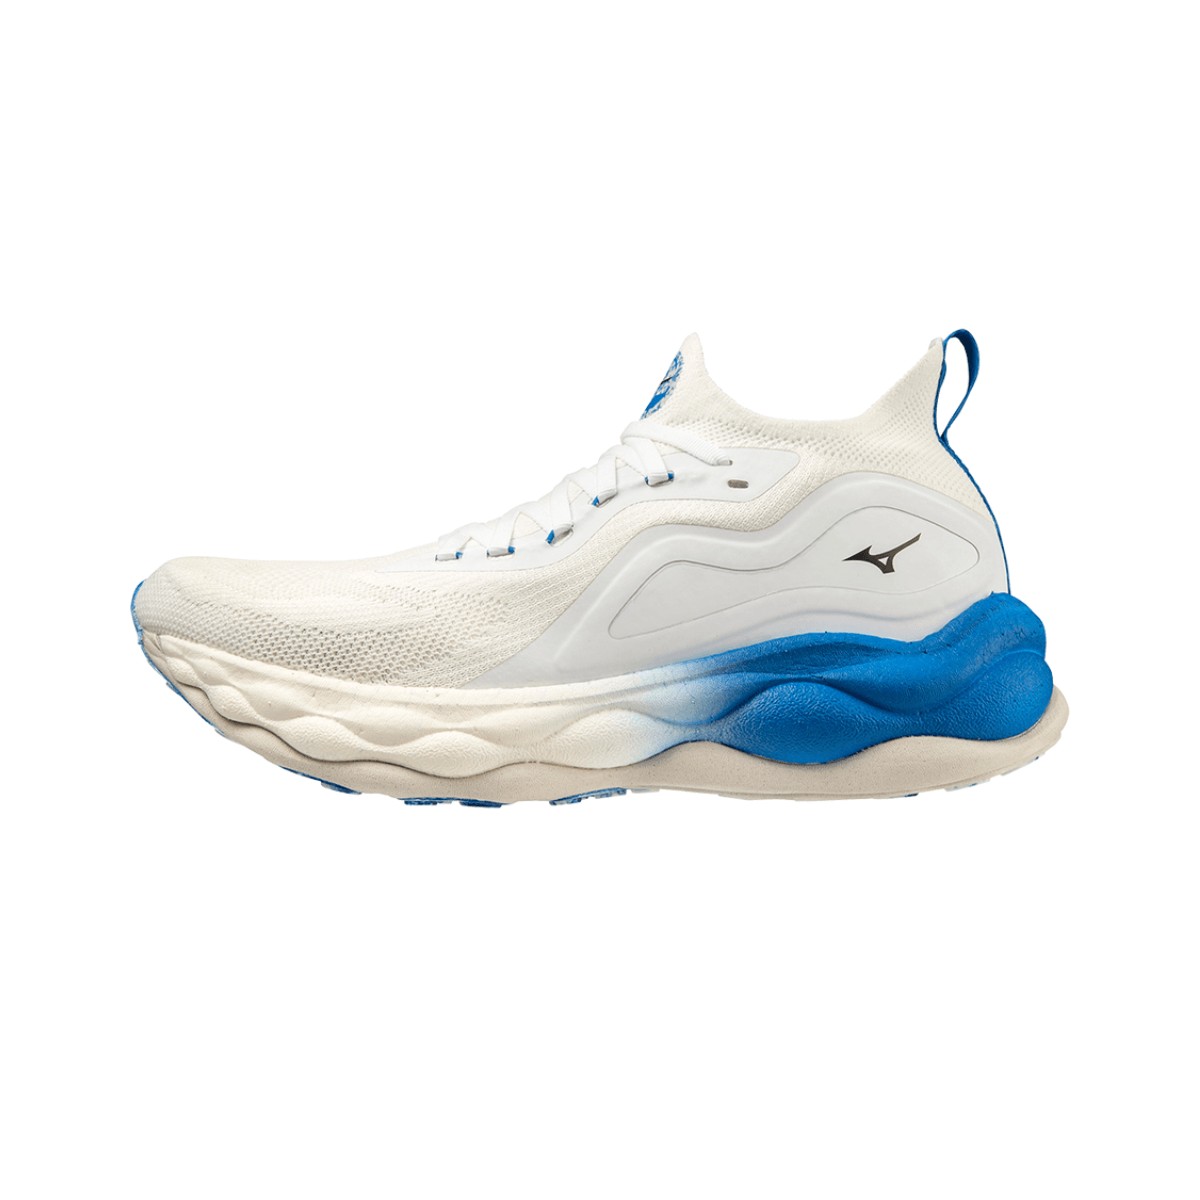 Sneakers Mizuno Wave Neo Ultra White Blue AW22, Size 41 - EUR